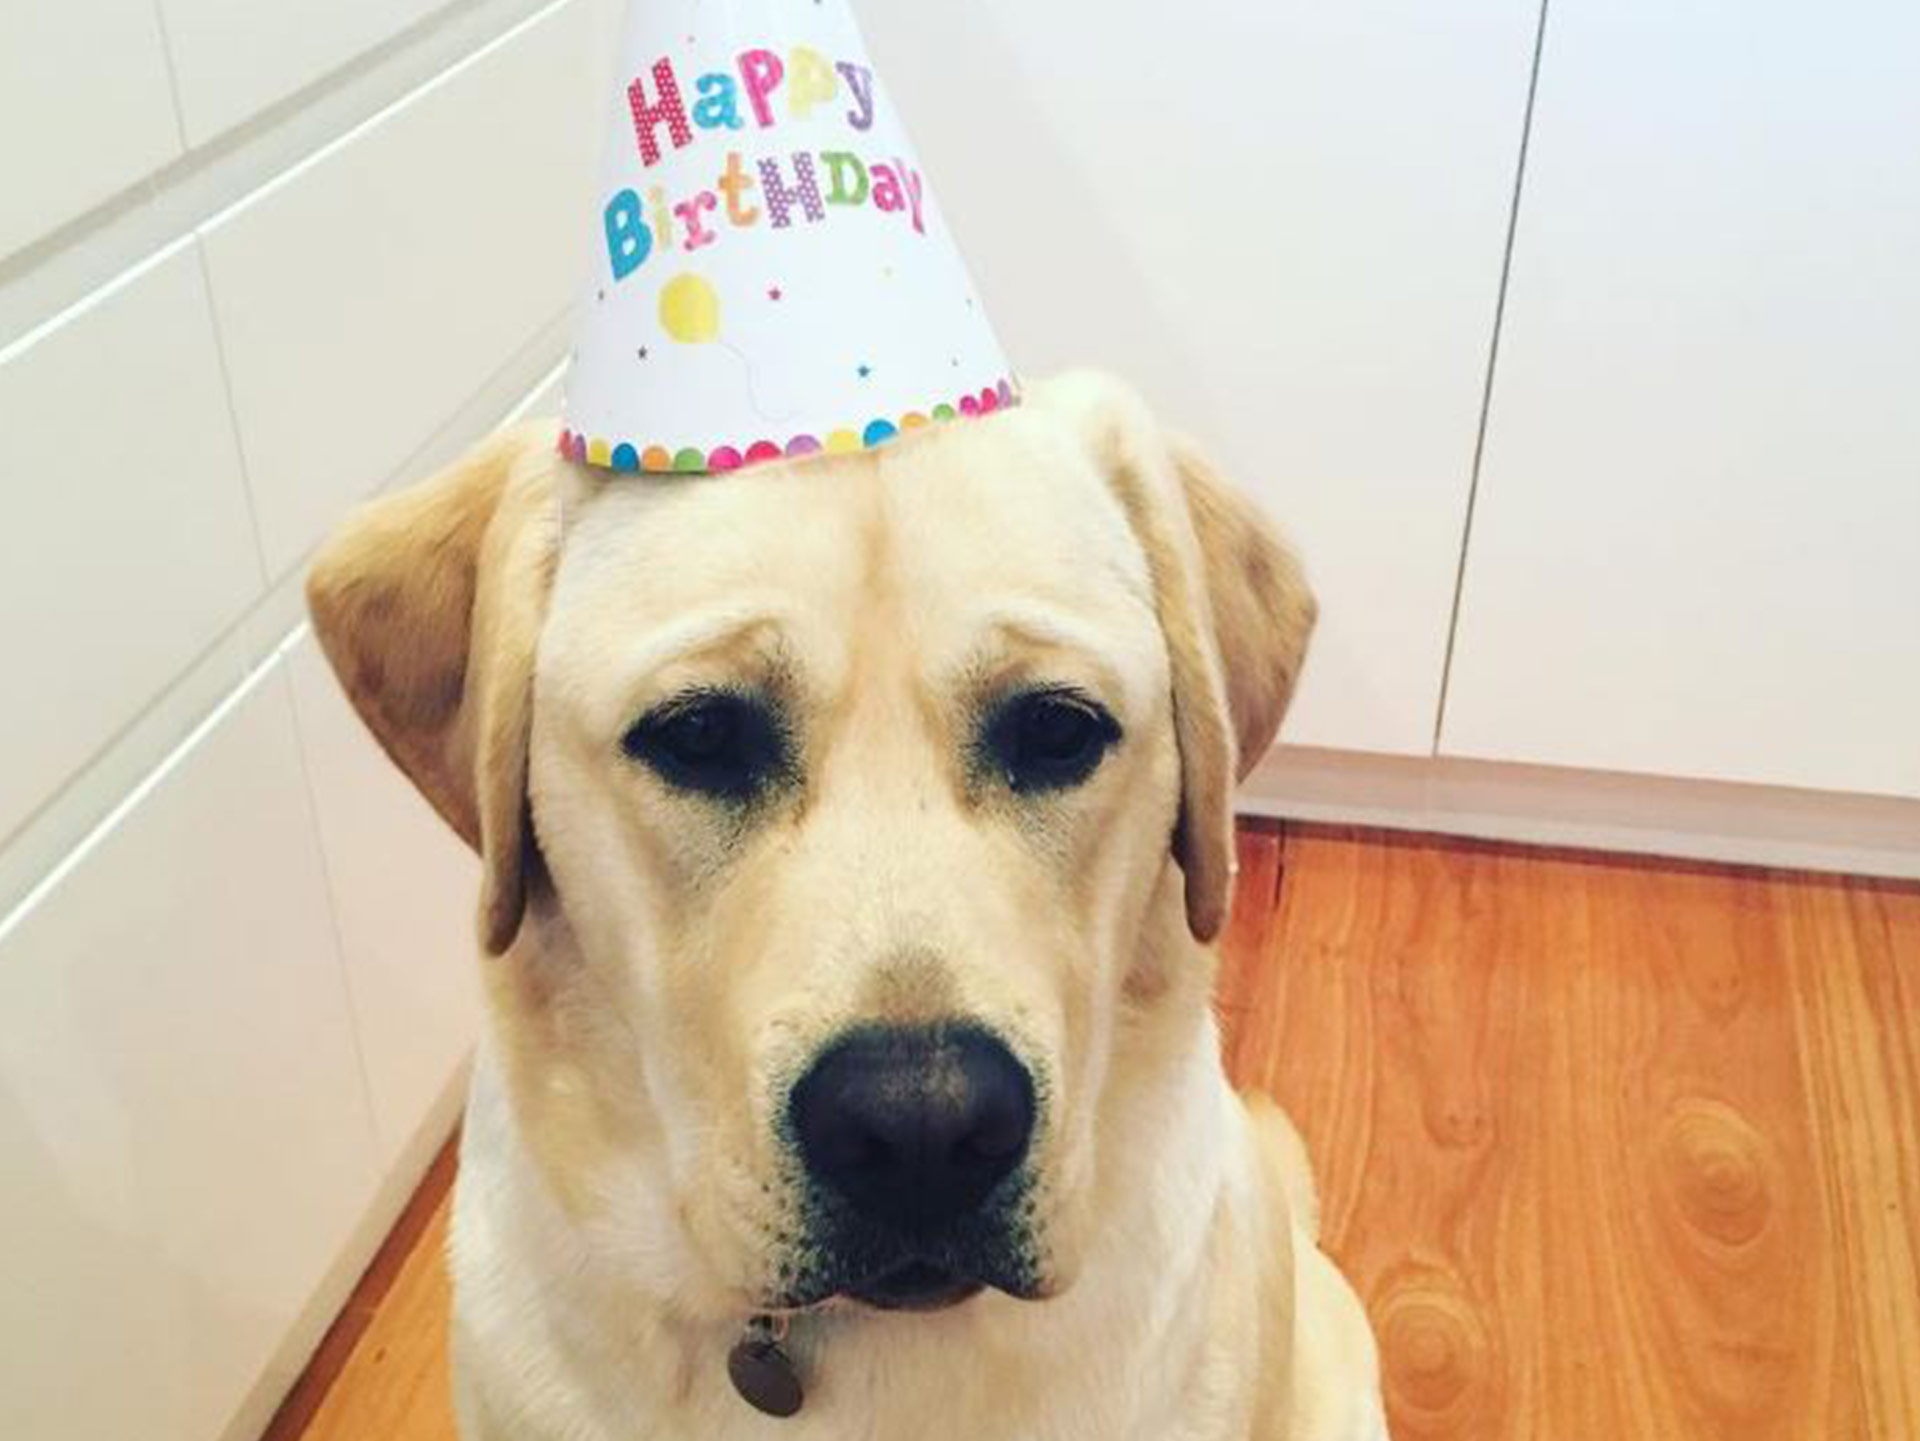 Samantha Armytage celebrates puppy Banjo’s first birthday